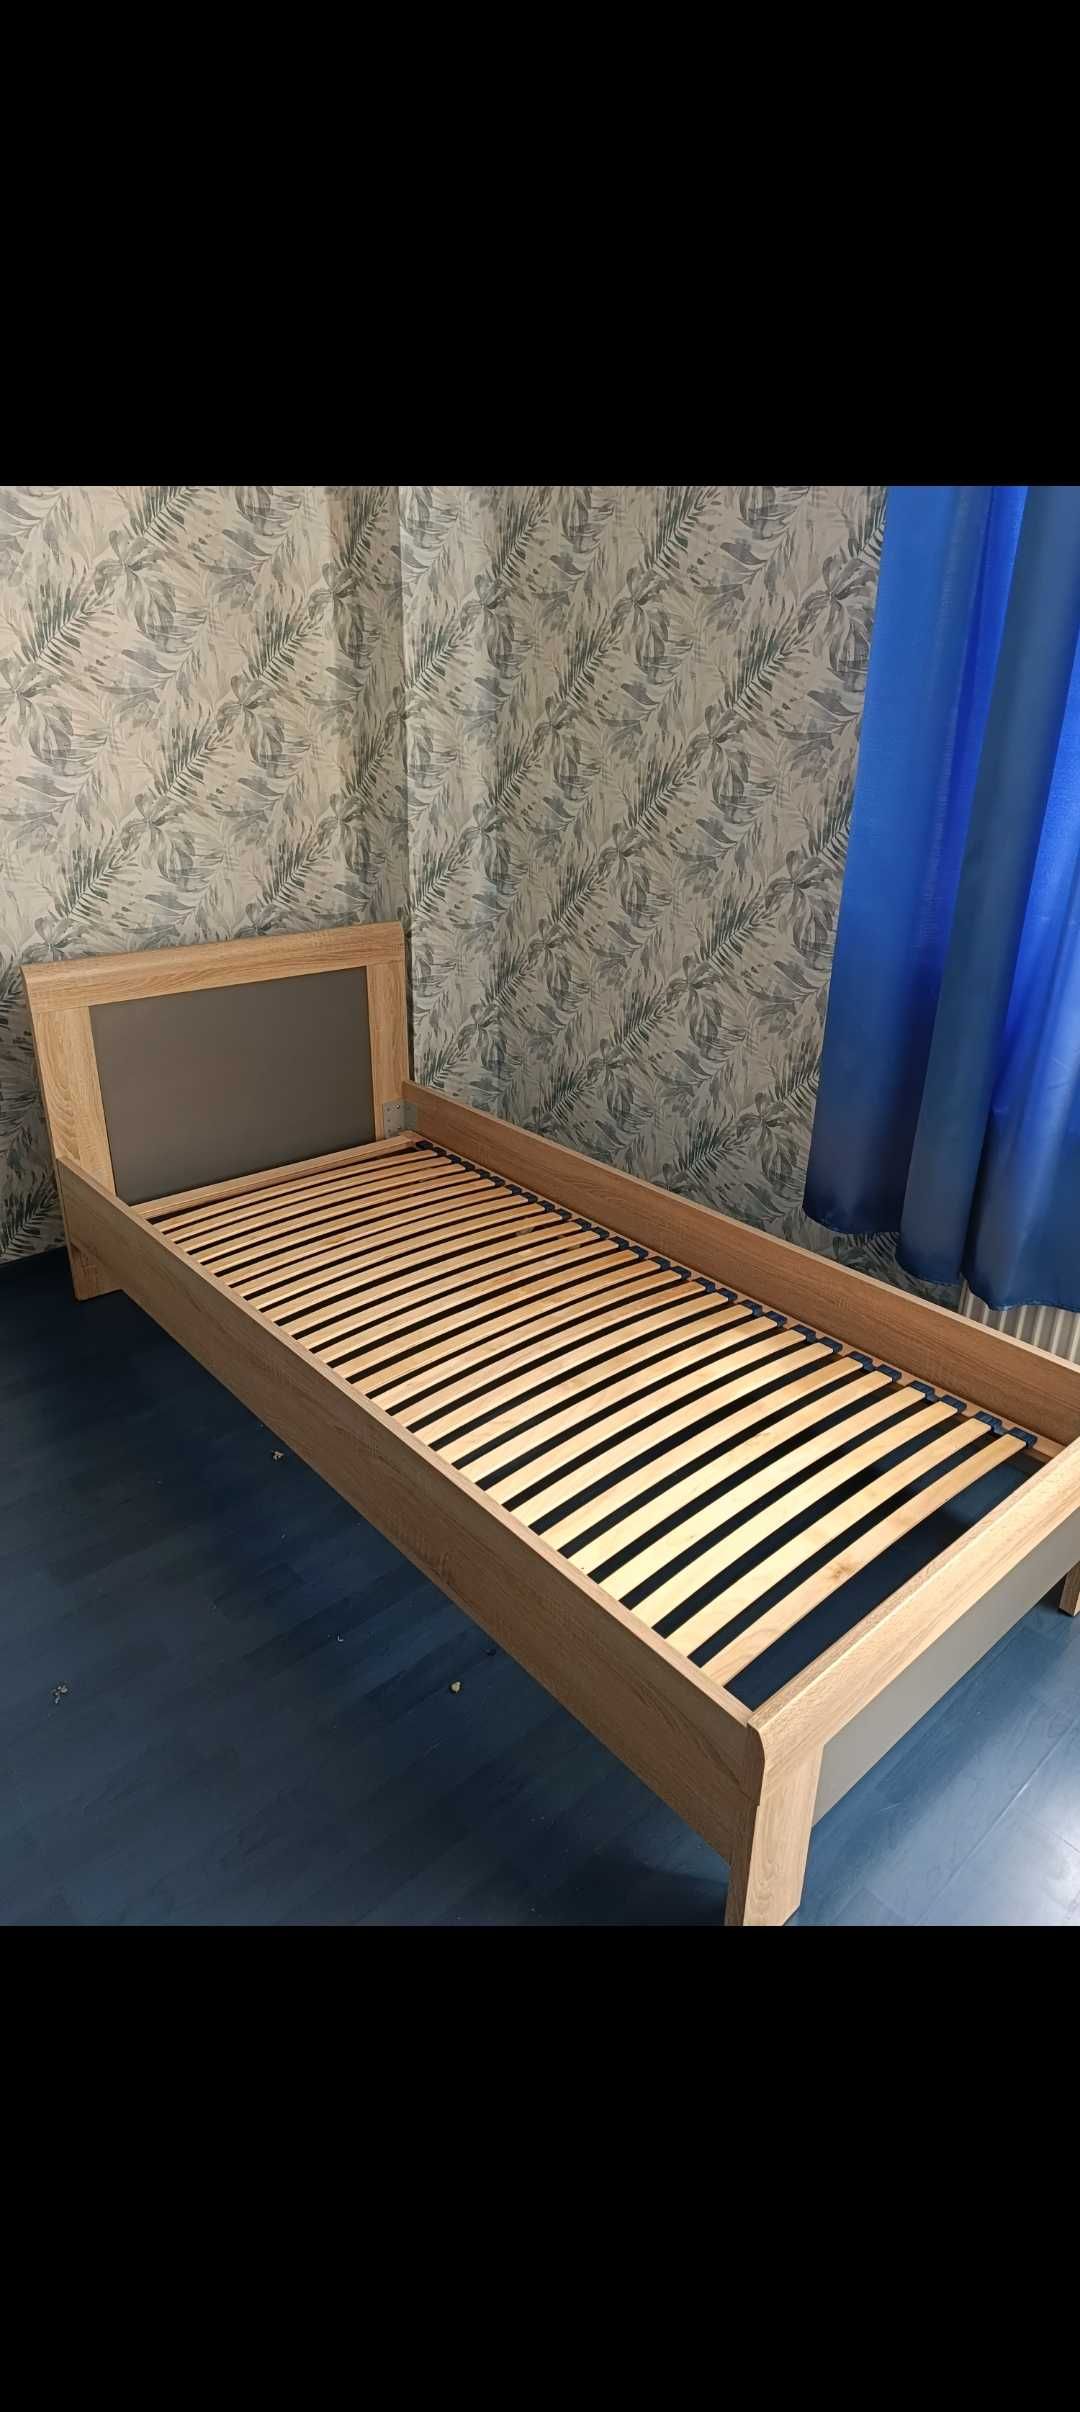 Łóżko 90x200 w dobrym stanie +materac